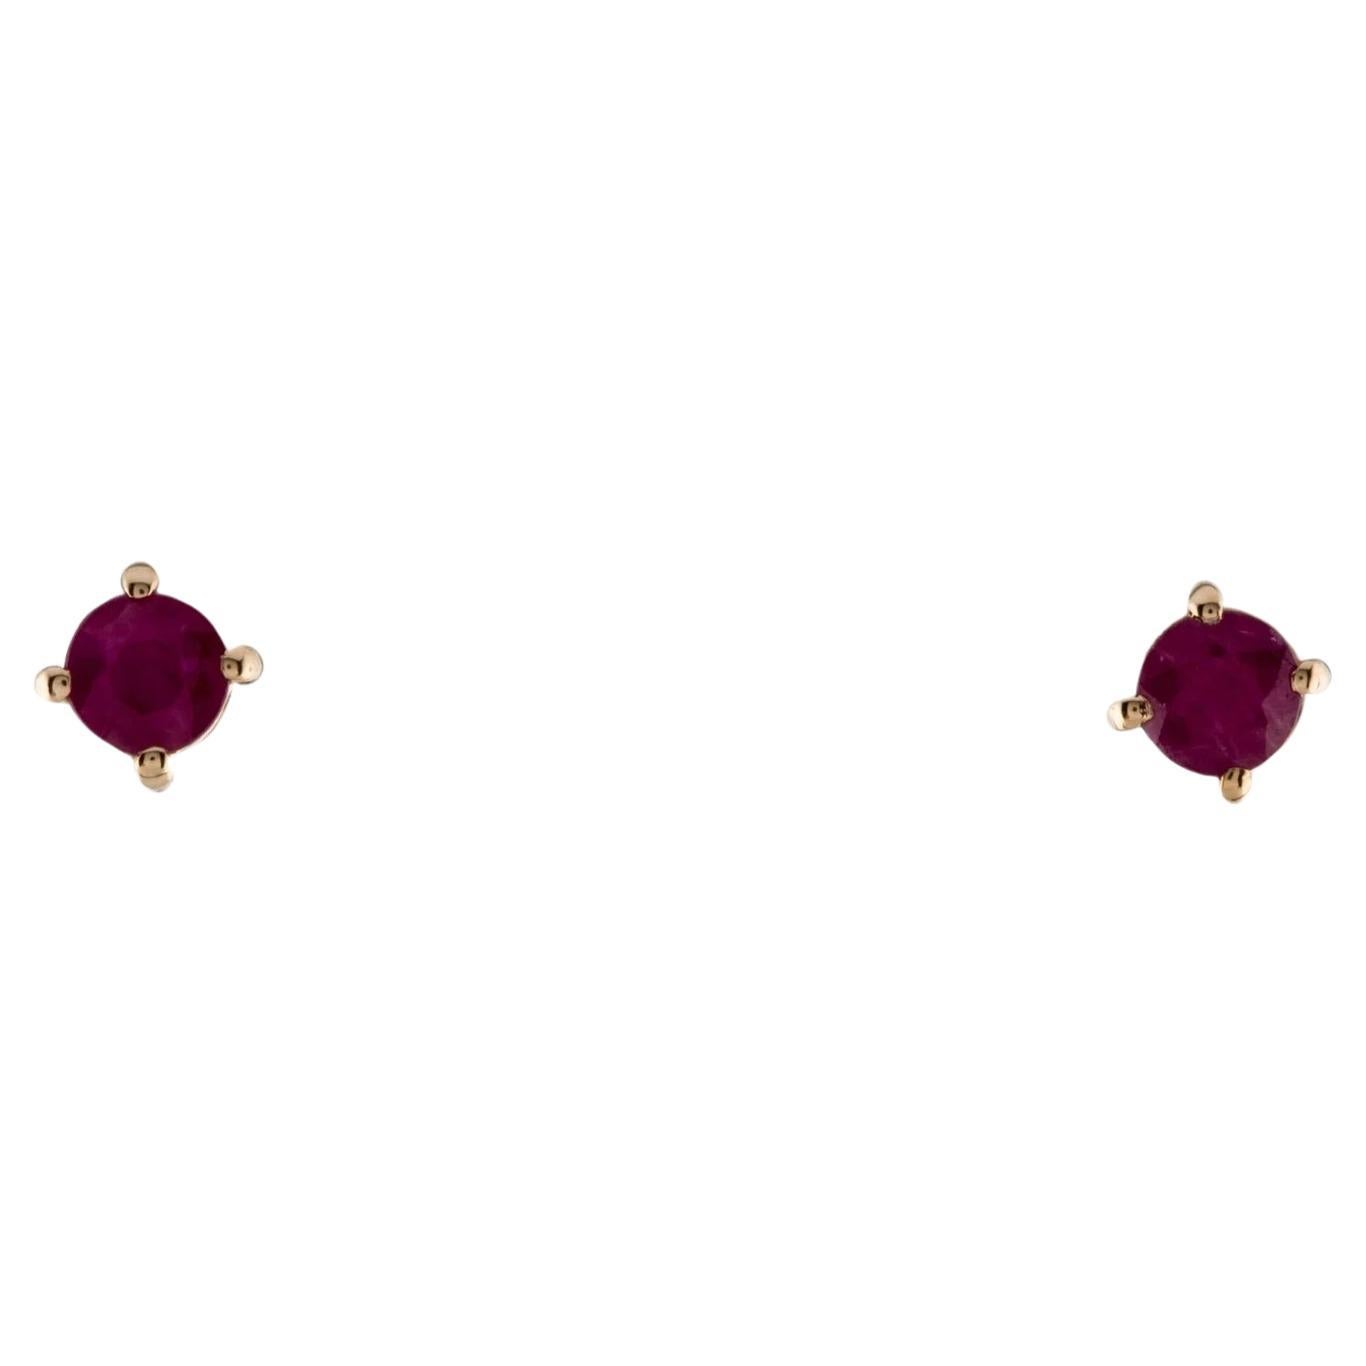 14K Ruby Stud Earrings, 0.55ctw